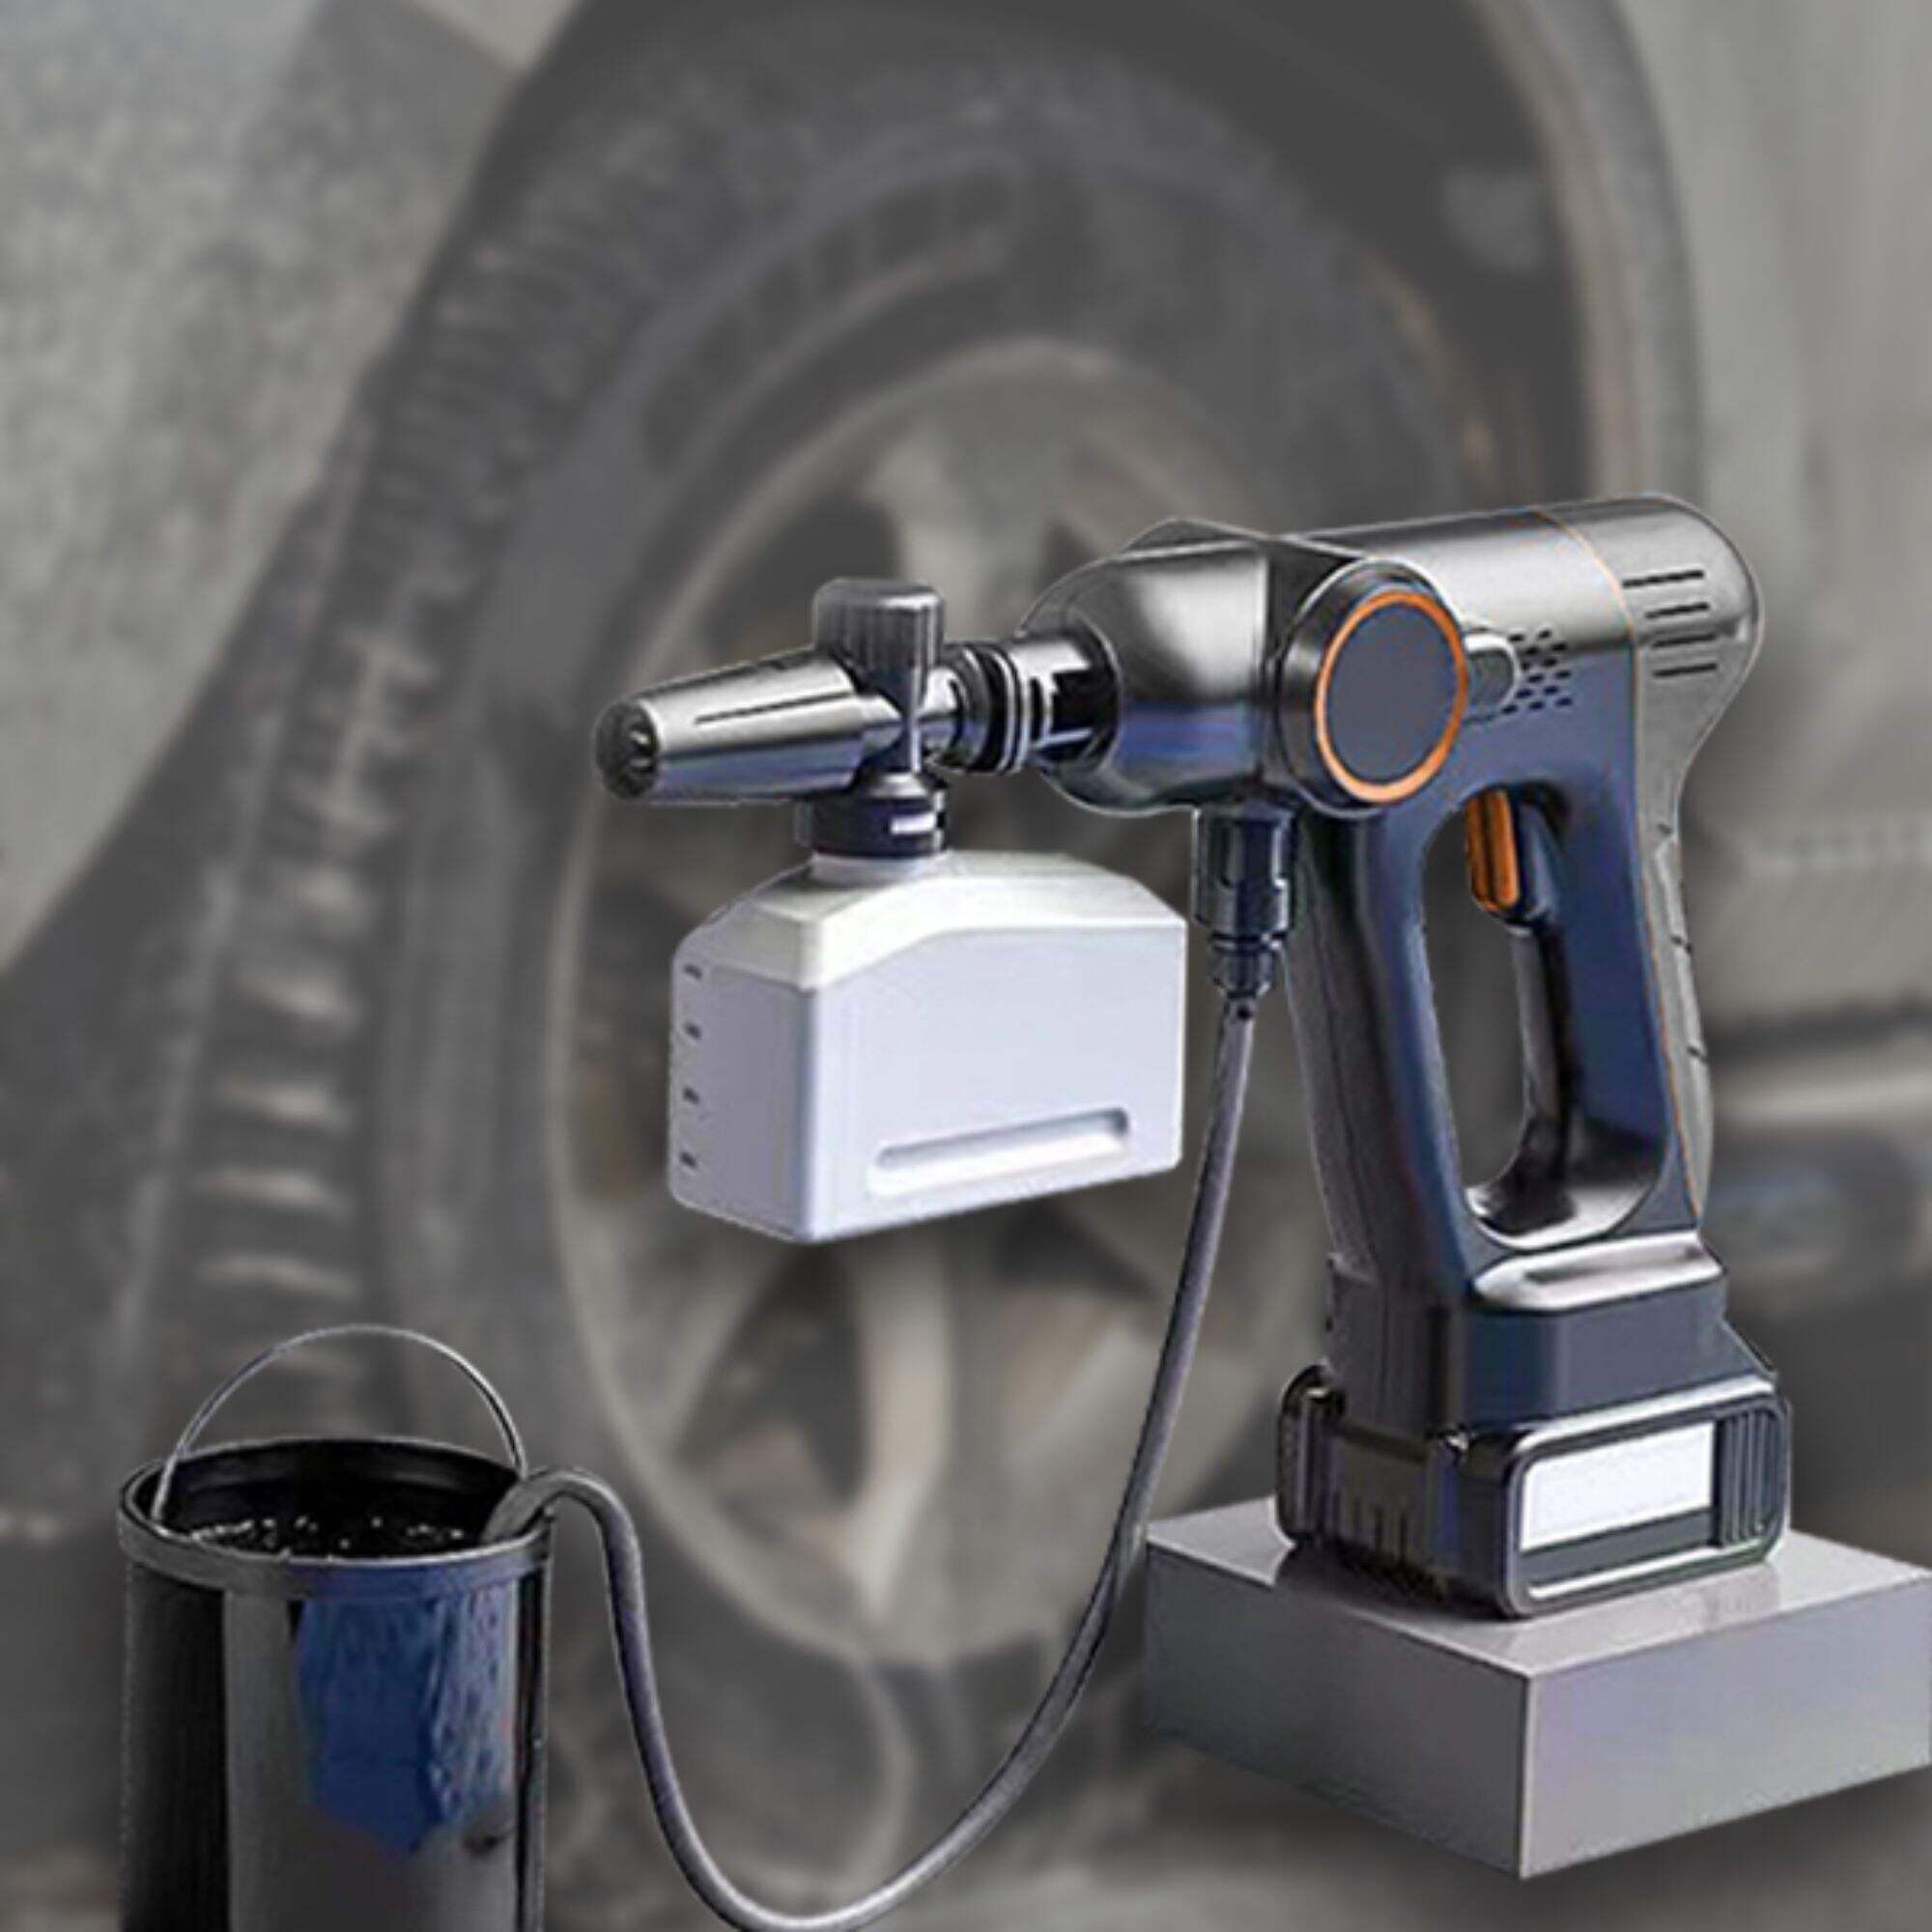 Revolutionera din biltvättupplevelse - den helt nya trådlösa biltvättpistolen står i centrum!